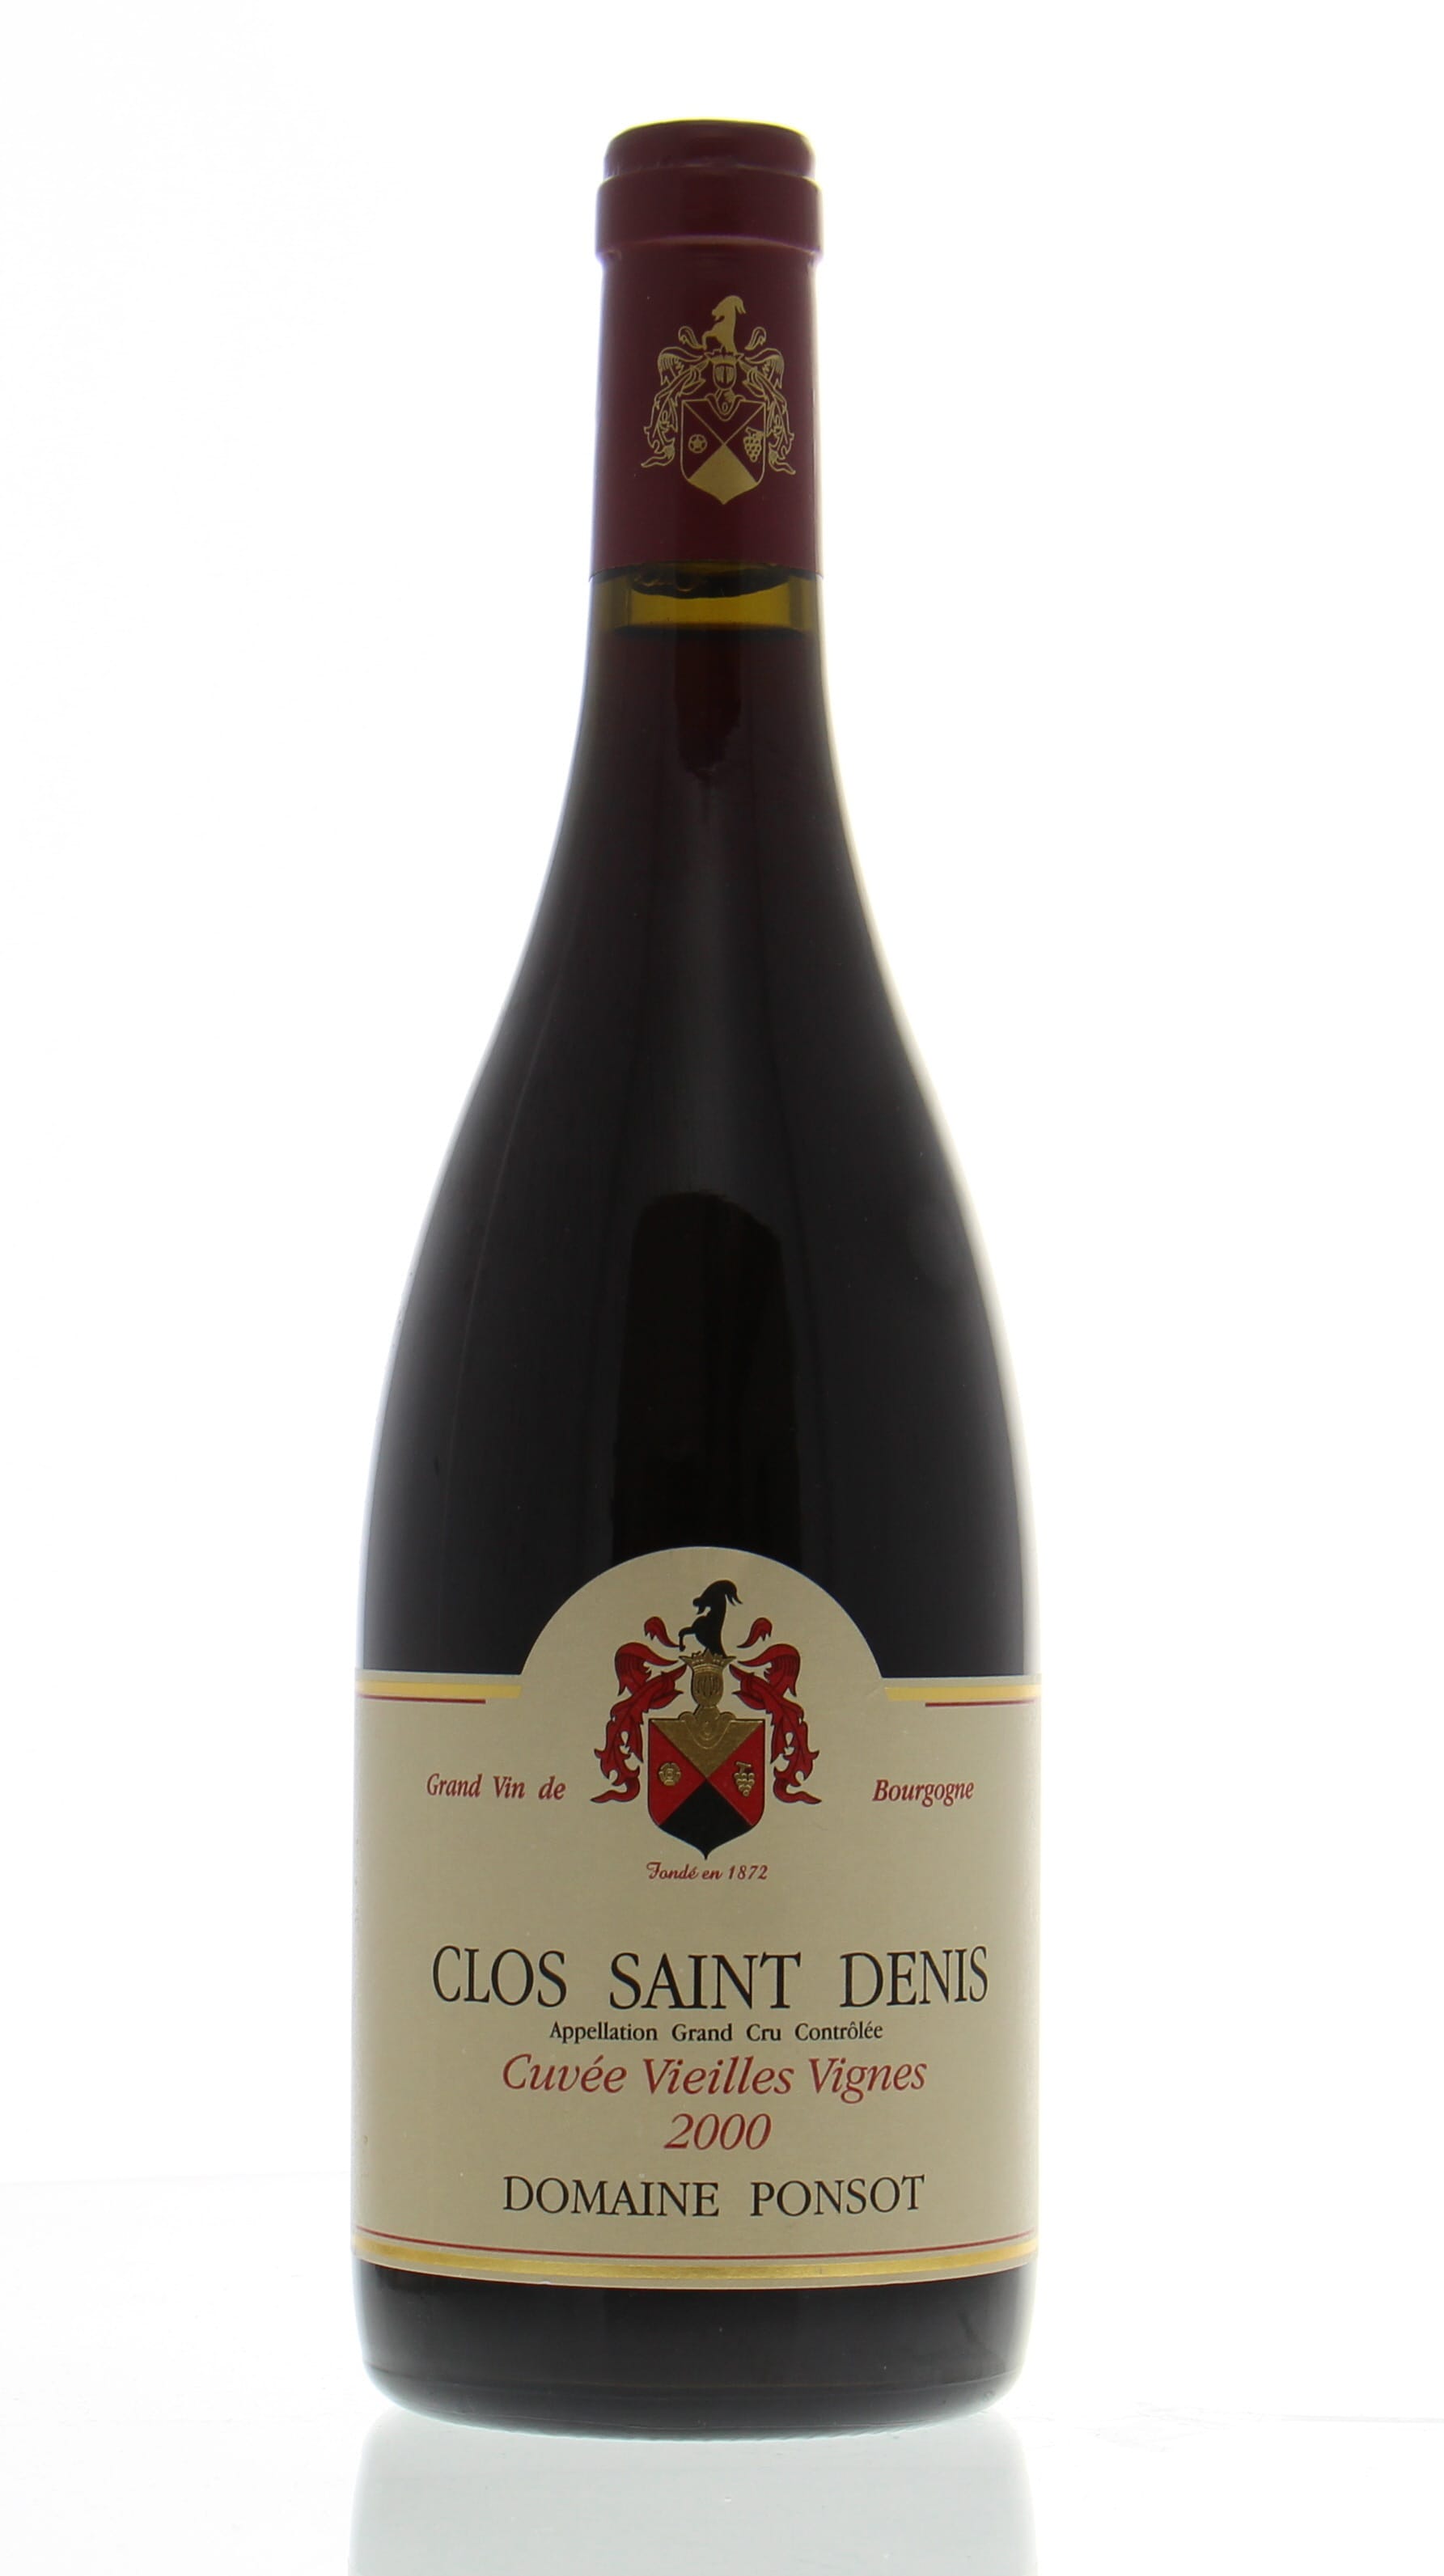 Domaine Ponsot - Clos Saint Denis cuvee Vieille Vignes 2000 Perfect